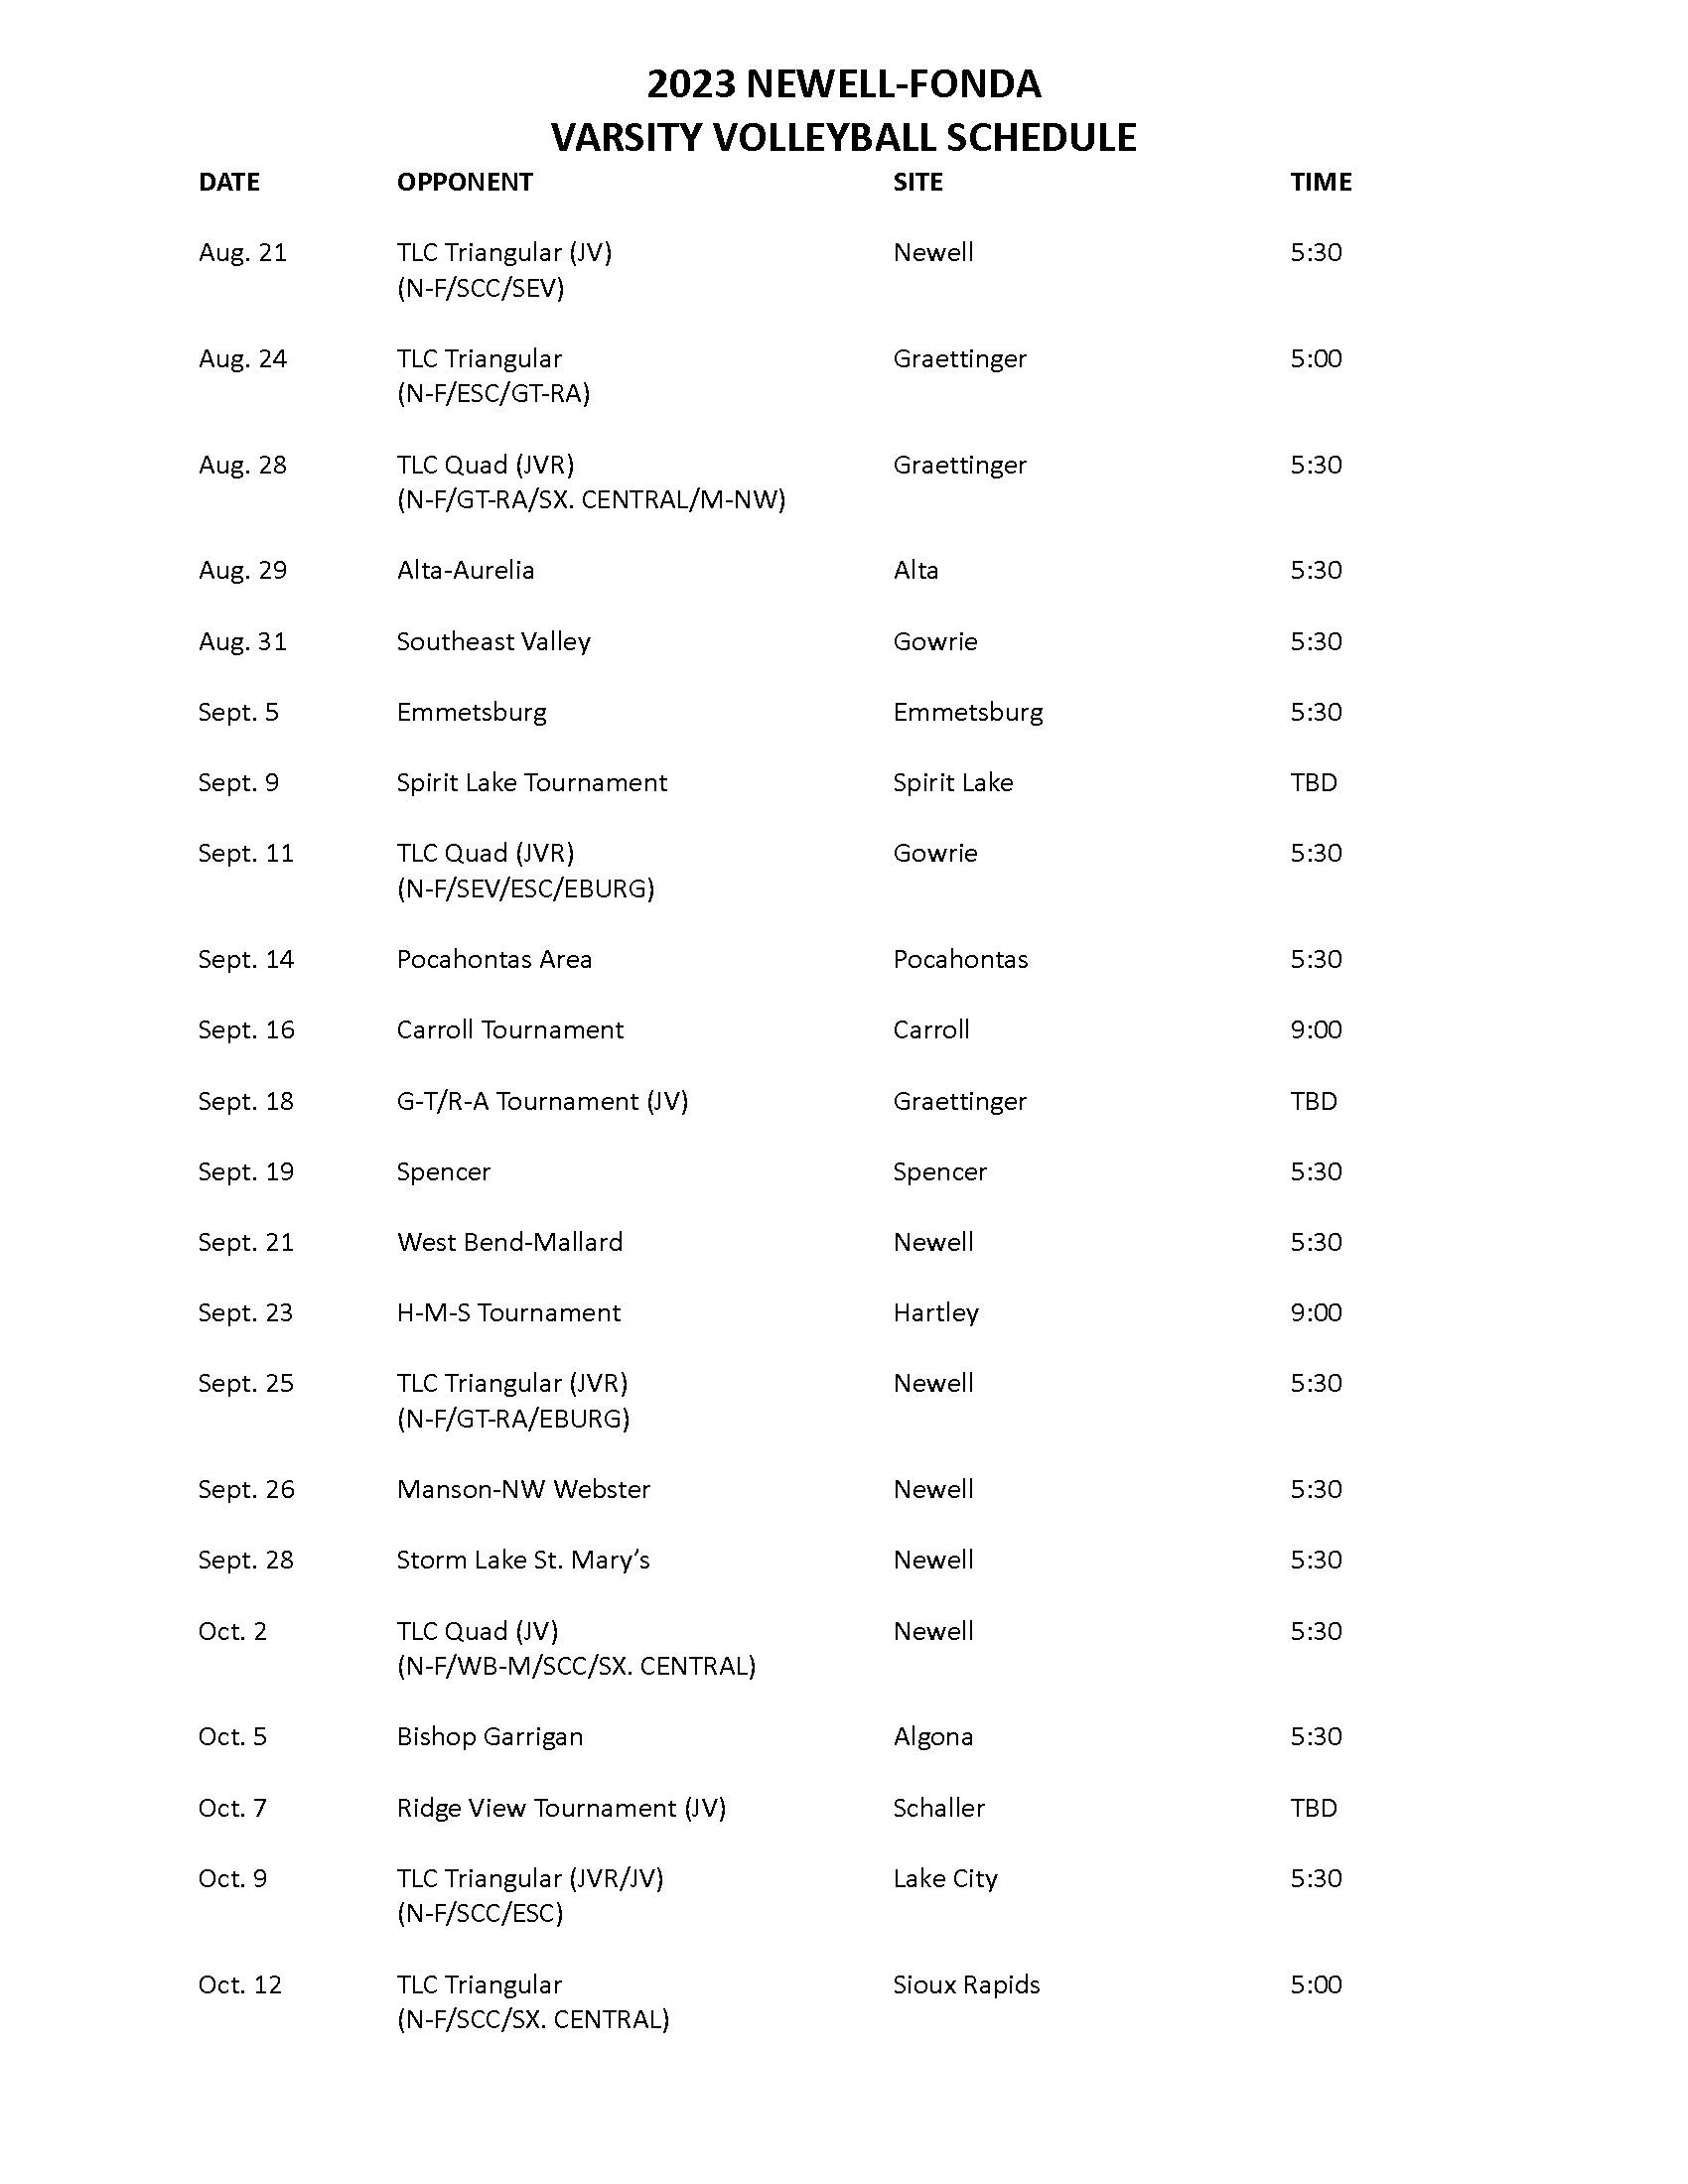 Varsity Volleyball Schedule 2023